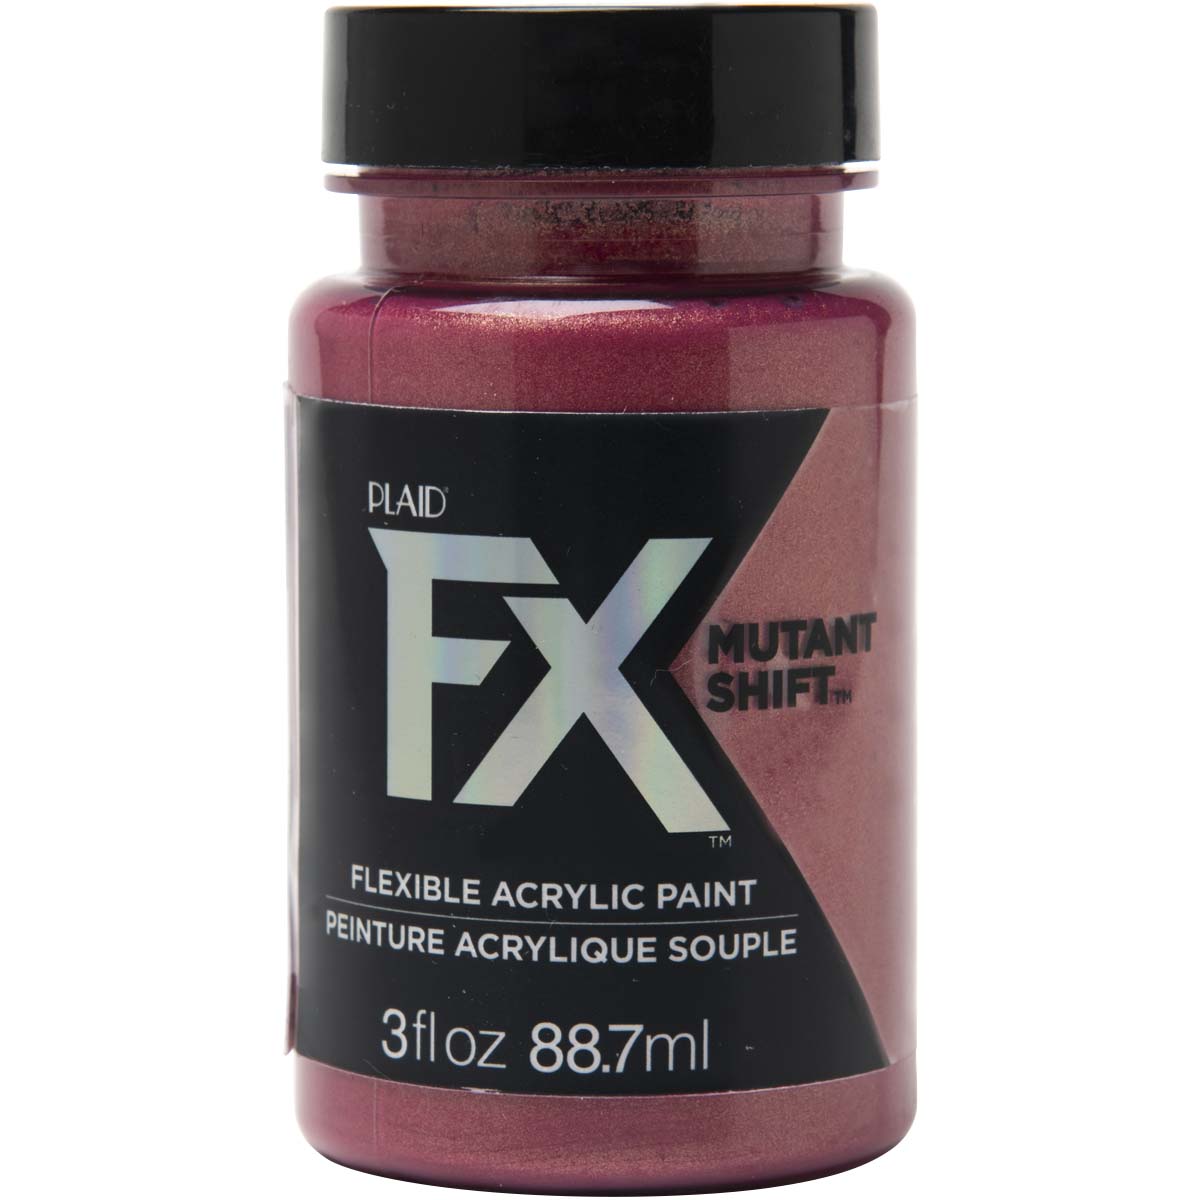 PlaidFX Mutant Shift Flexible Acrylic Paint - Infrared, 3 oz. - 36916